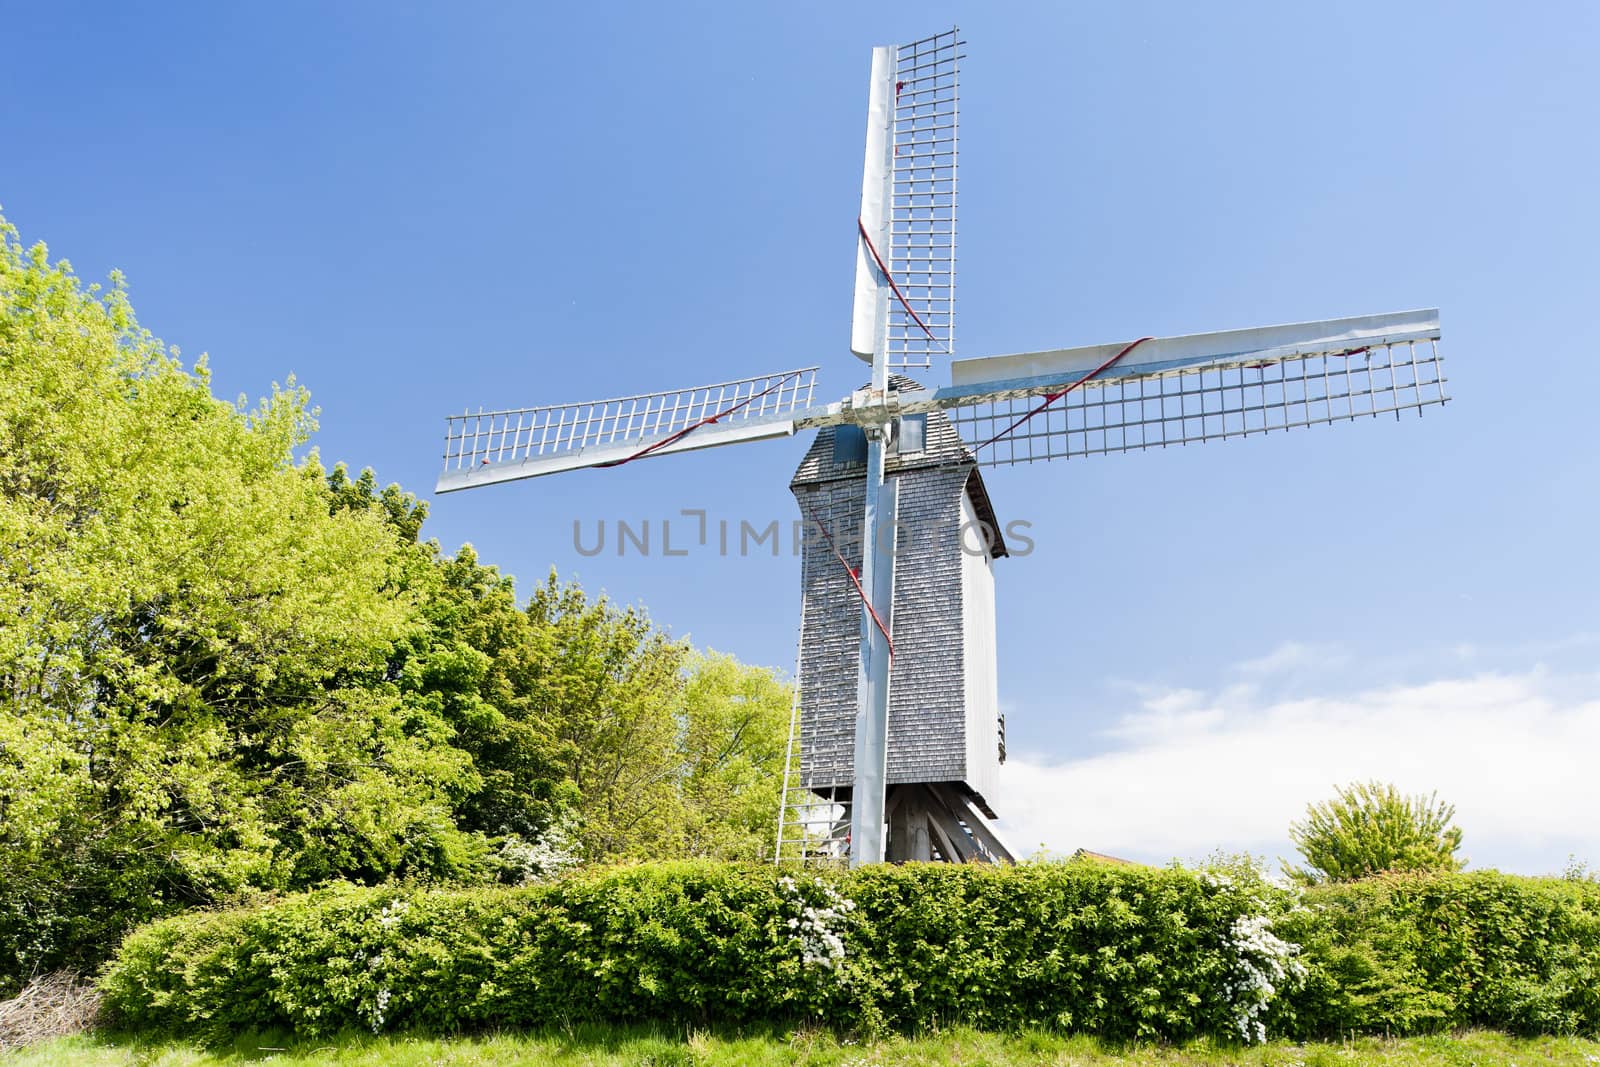 windmill of Terdeghem, Nord-Pas-de-Calais, France by phbcz